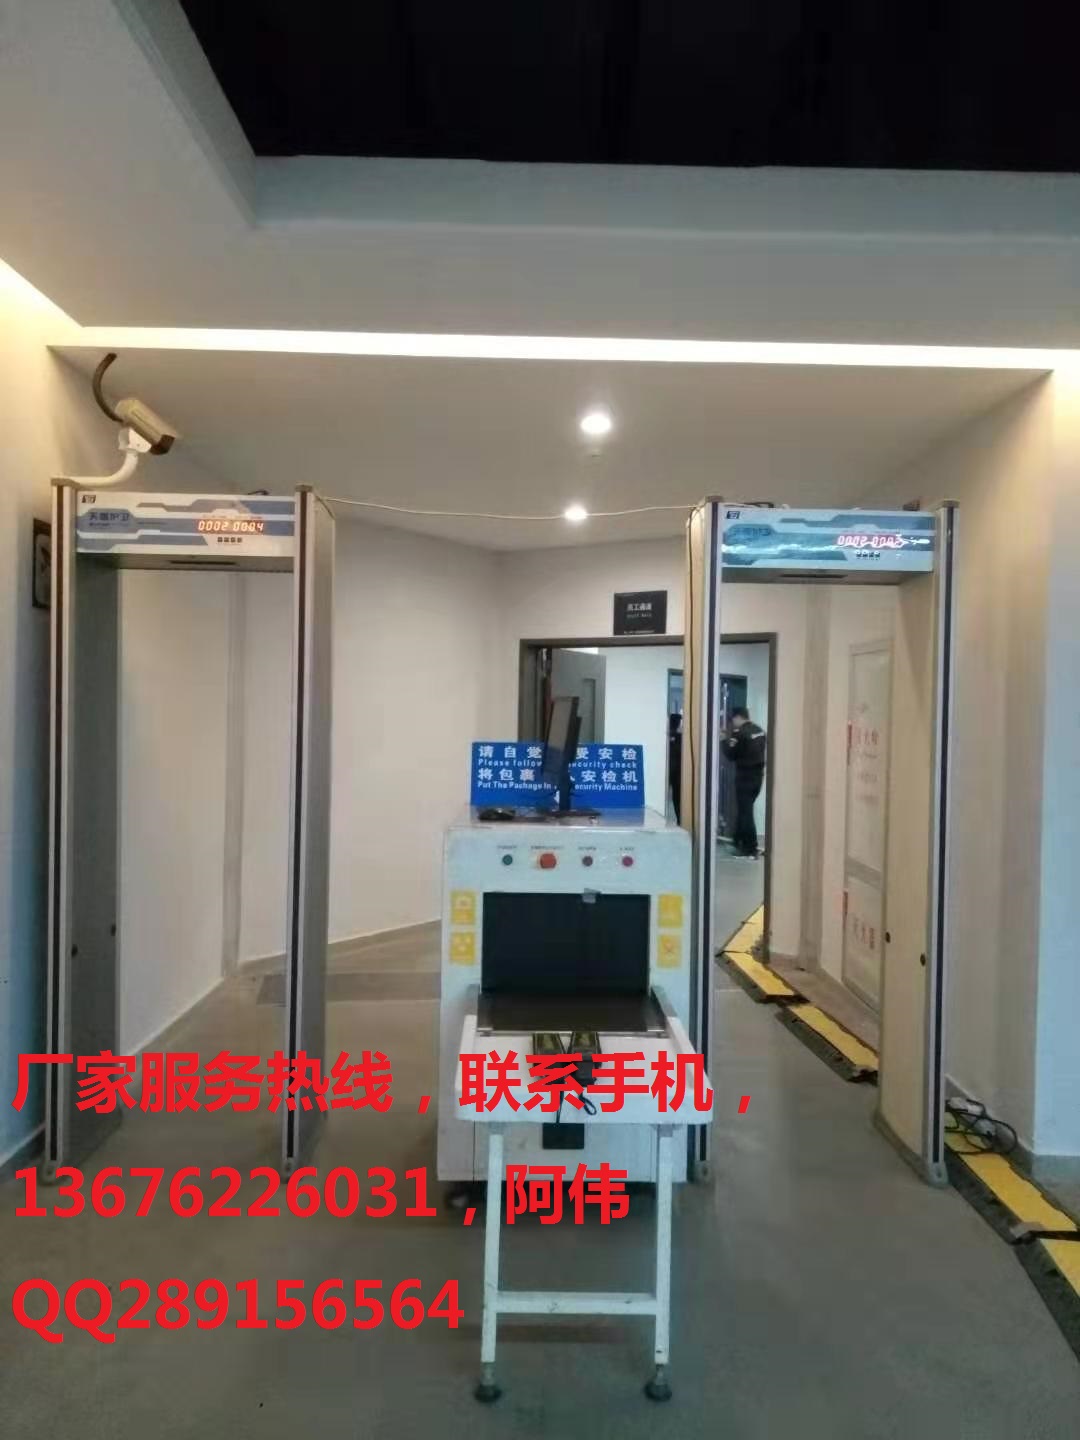 广州安检机安检门专业一体化销售服务 测温安检门